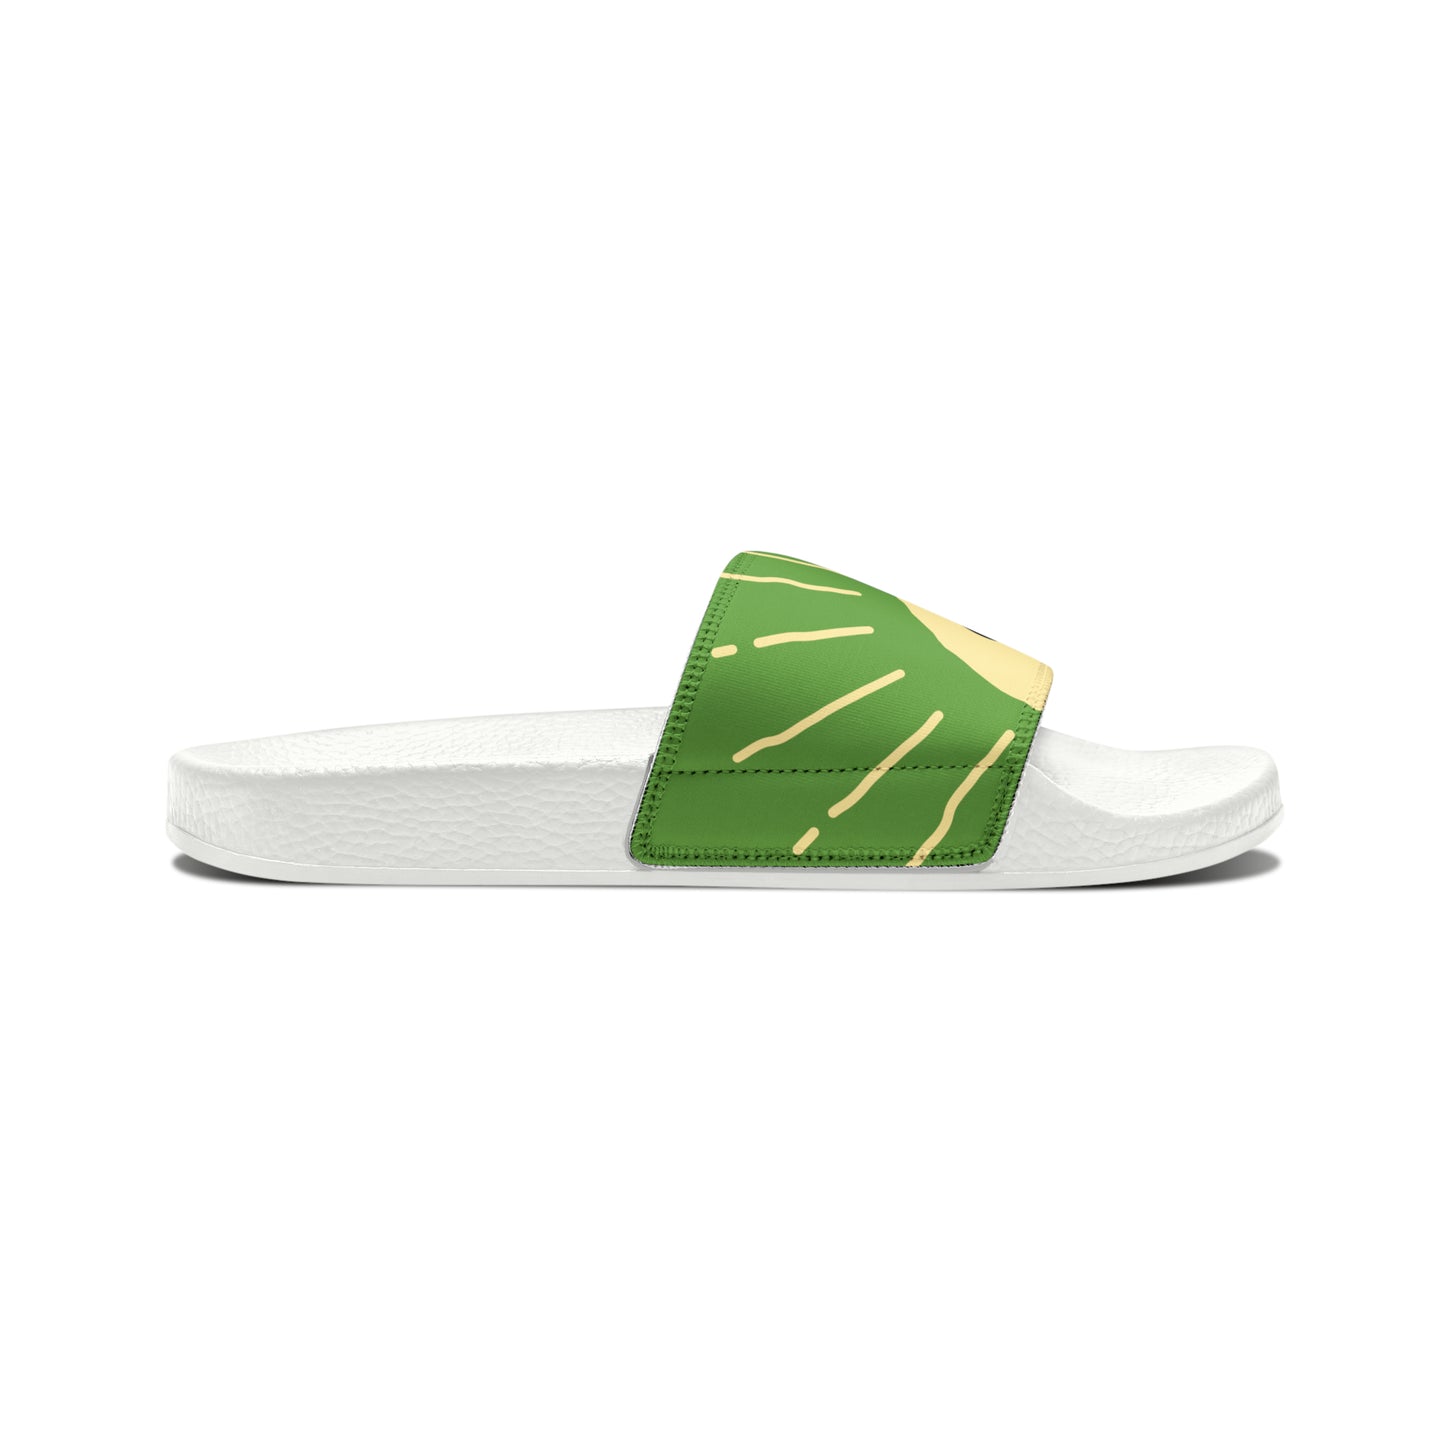 Slide Sandals [White\Light Green]